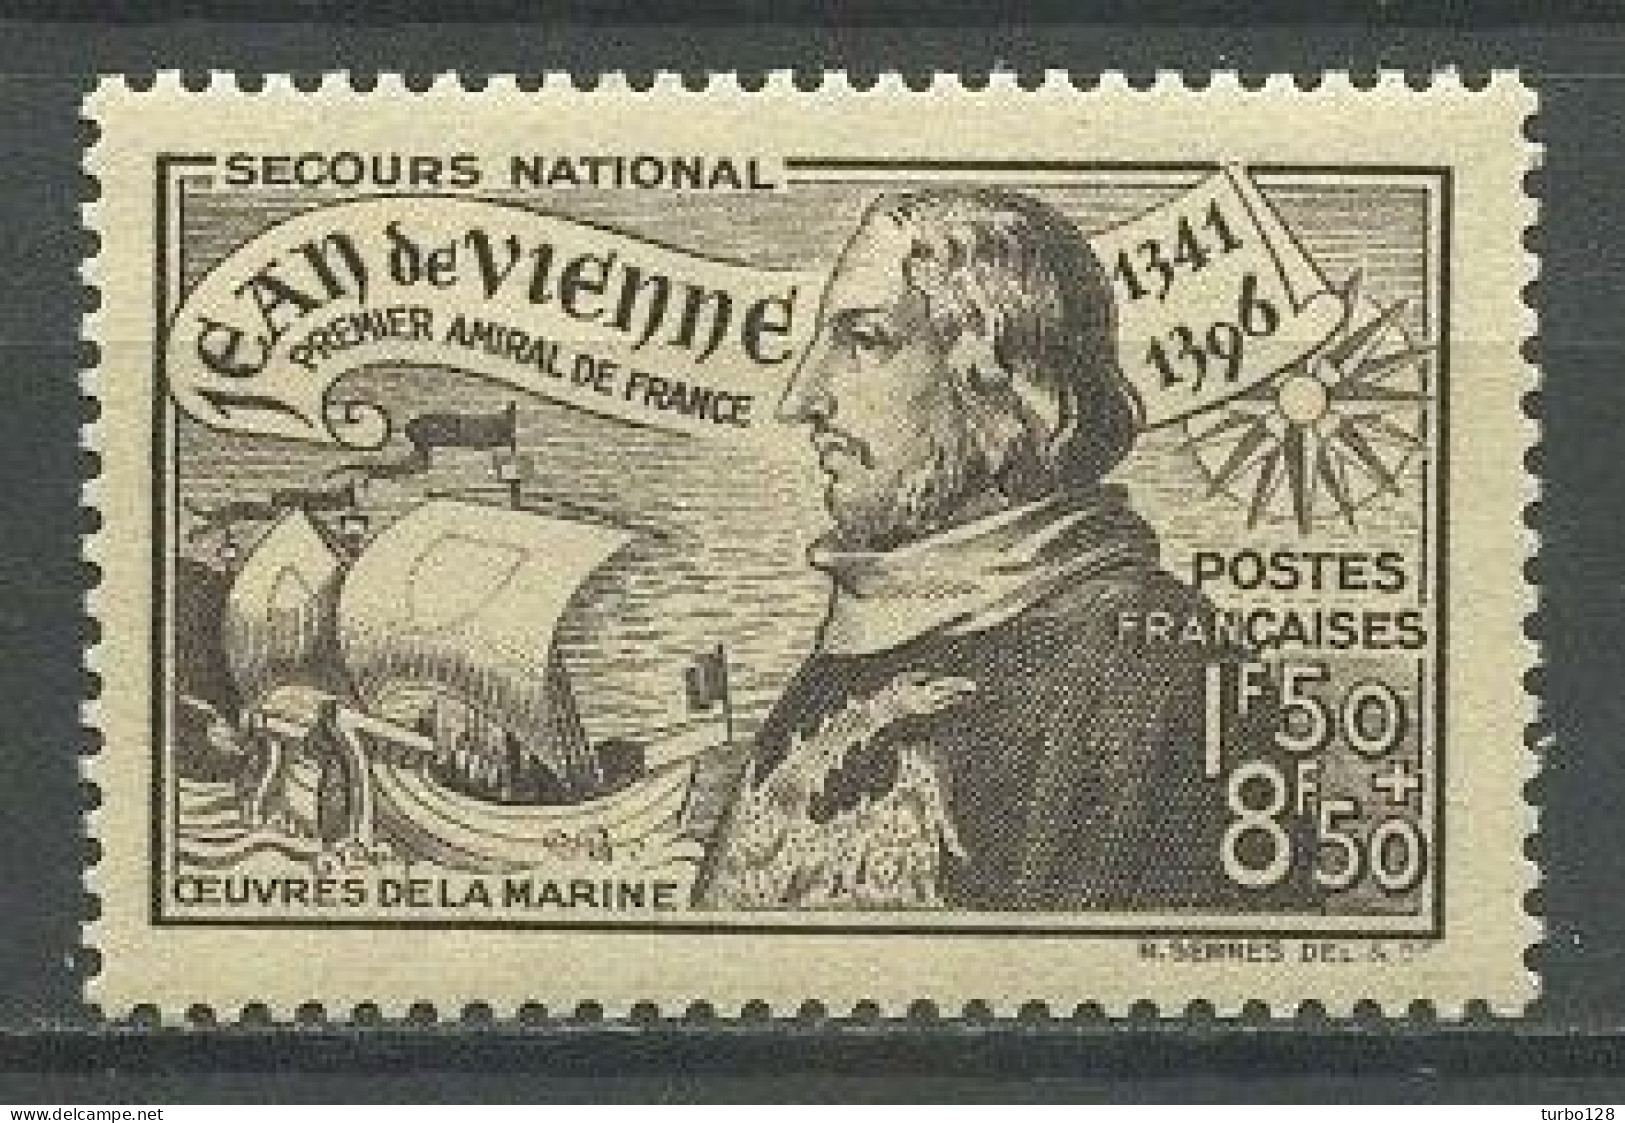 FRANCE 1942 N° 544 ** Neuf MNH Superbe C 1.40 € Jean De Vienne Amiral De France Bateaux Voiliers Sailboats Maritime - Ungebraucht